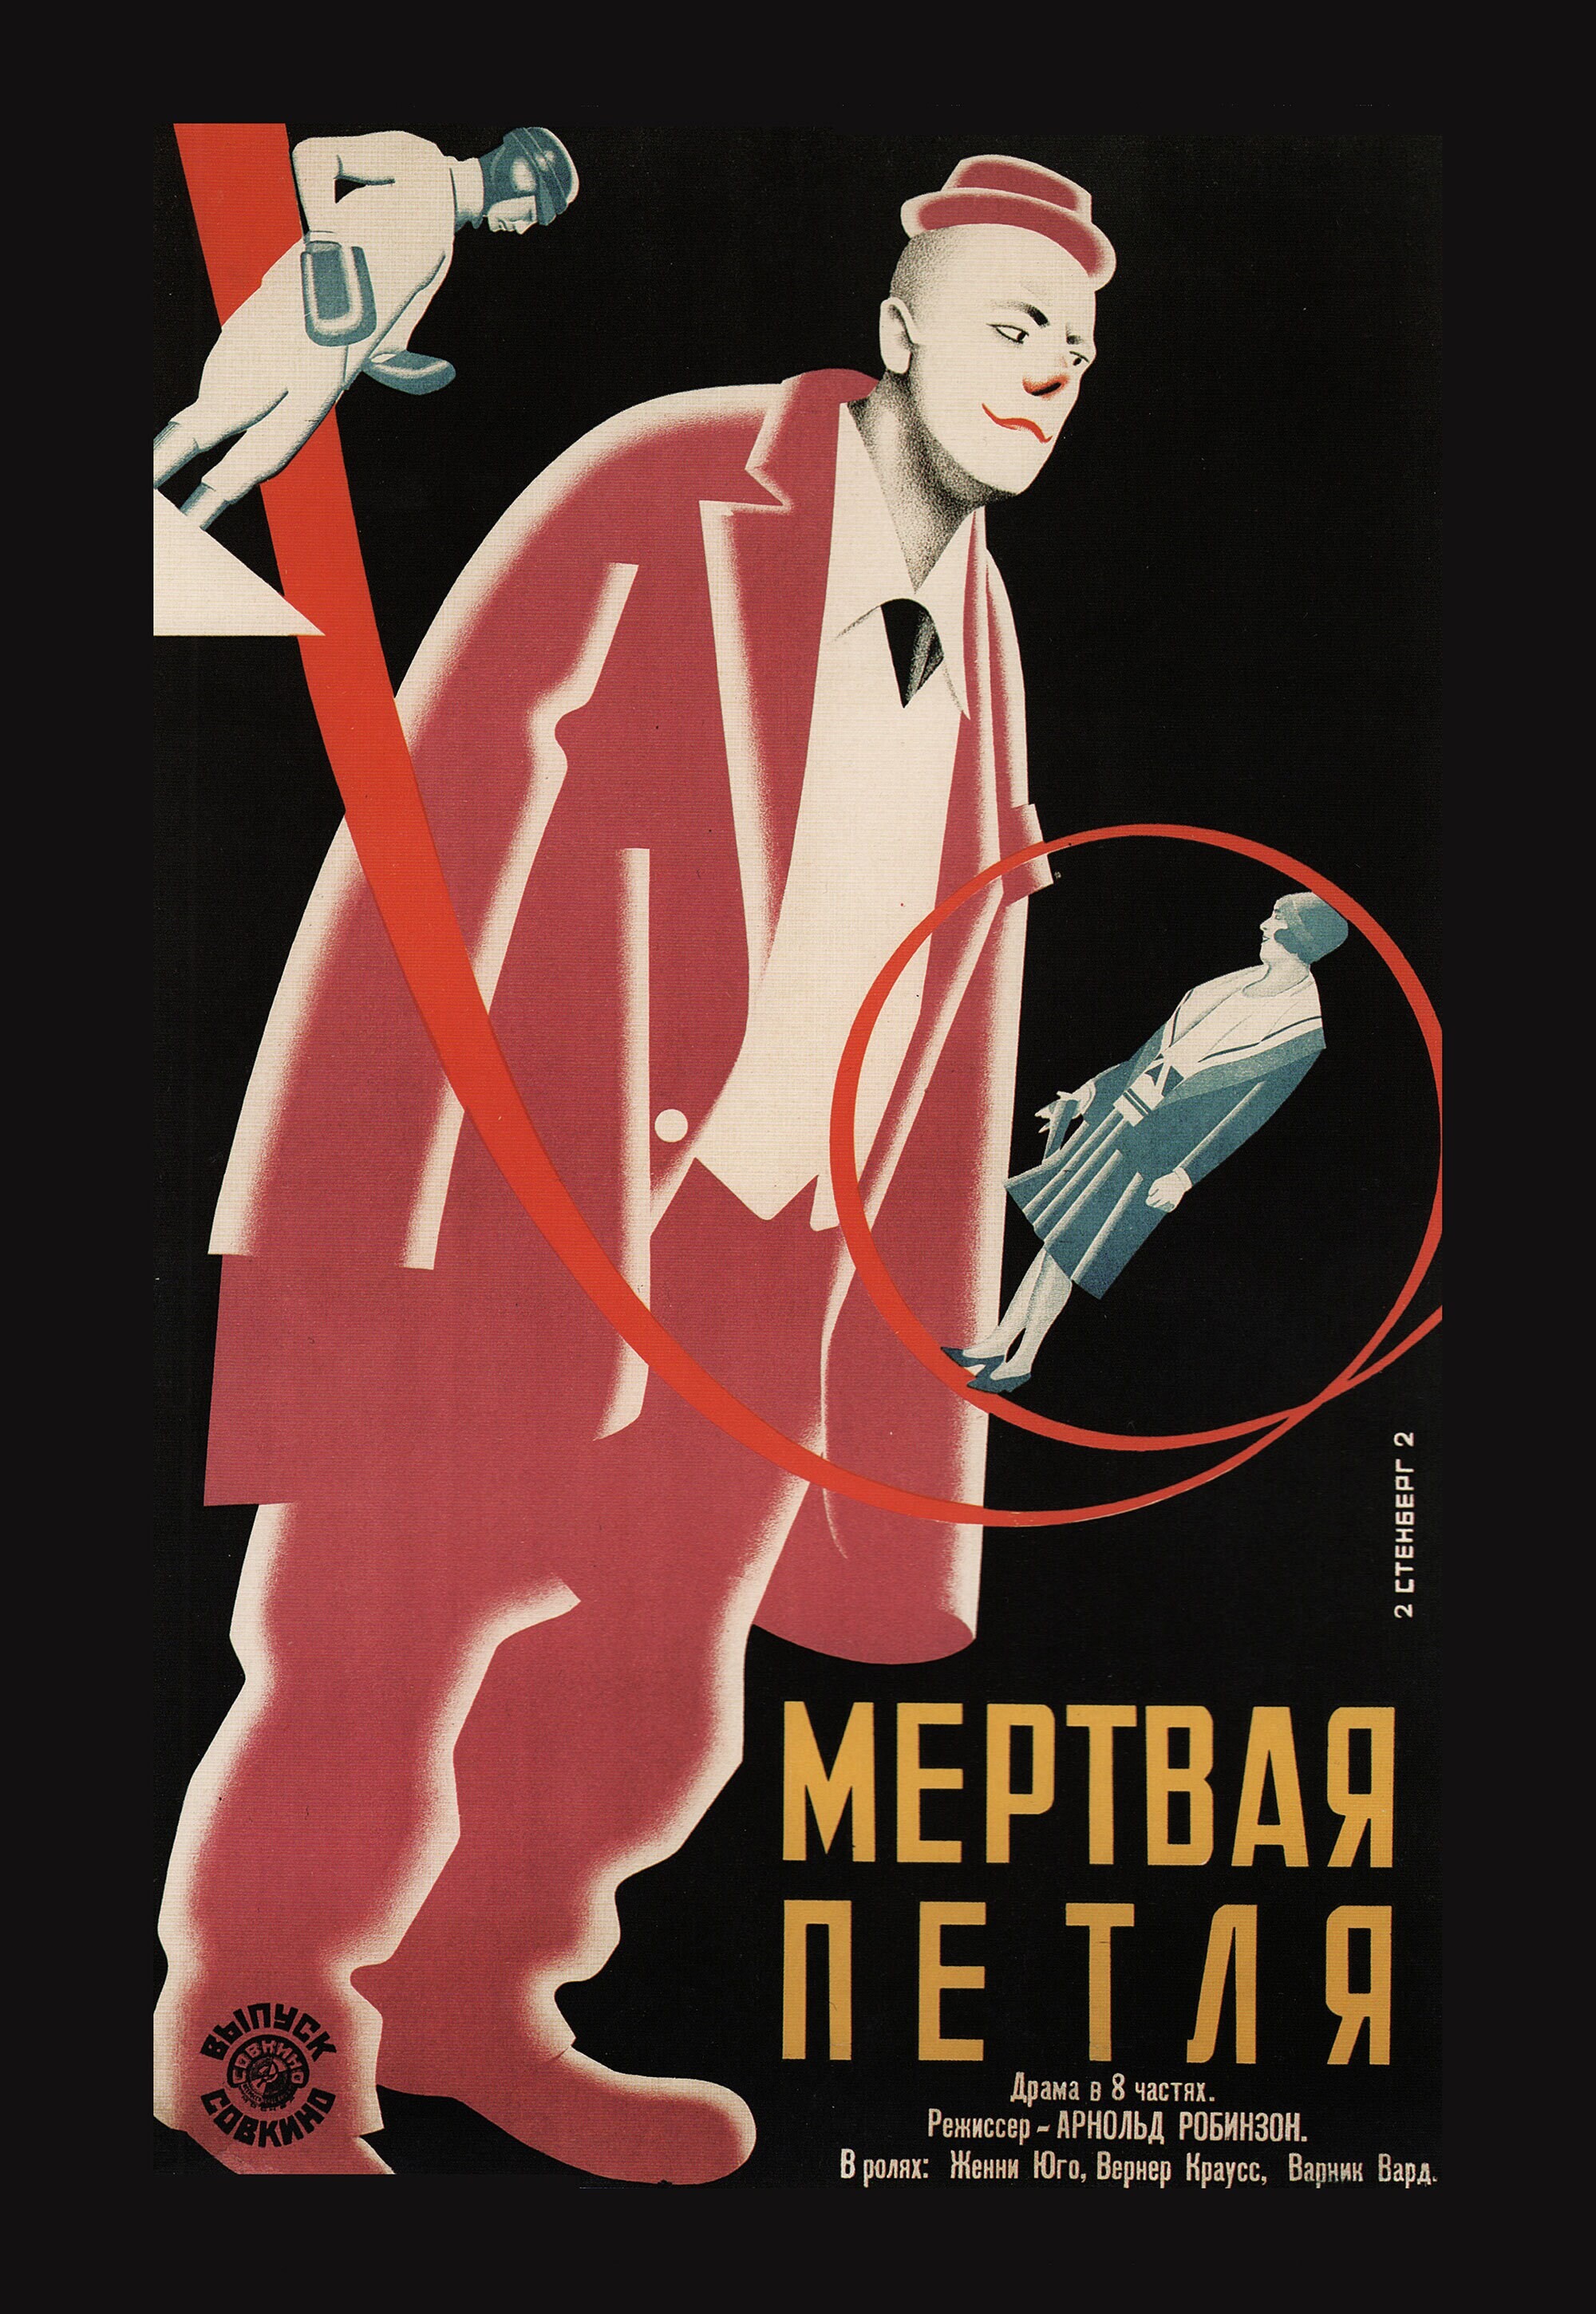 Мертвая петля, 1929 год, режиссёр Арнольд Робинзон, плакат к фильму, автор Владимир и Георгий Стенберги (авангардное советское искусство, 1920-е)